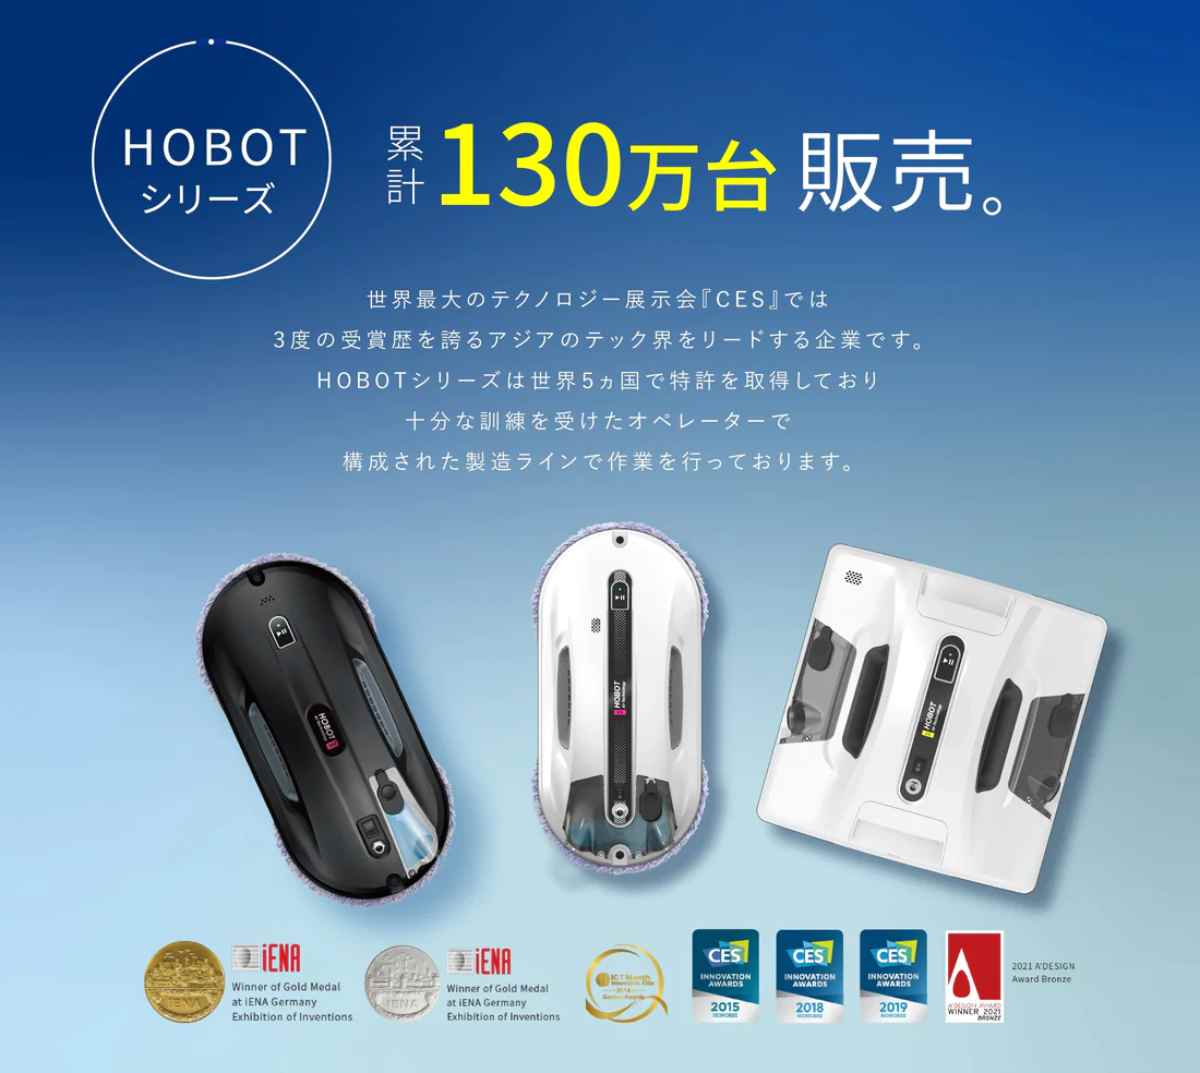 【特価セール】HOBOT-188 窓掃除ロボット 窓拭きロボットガラスクリーナー